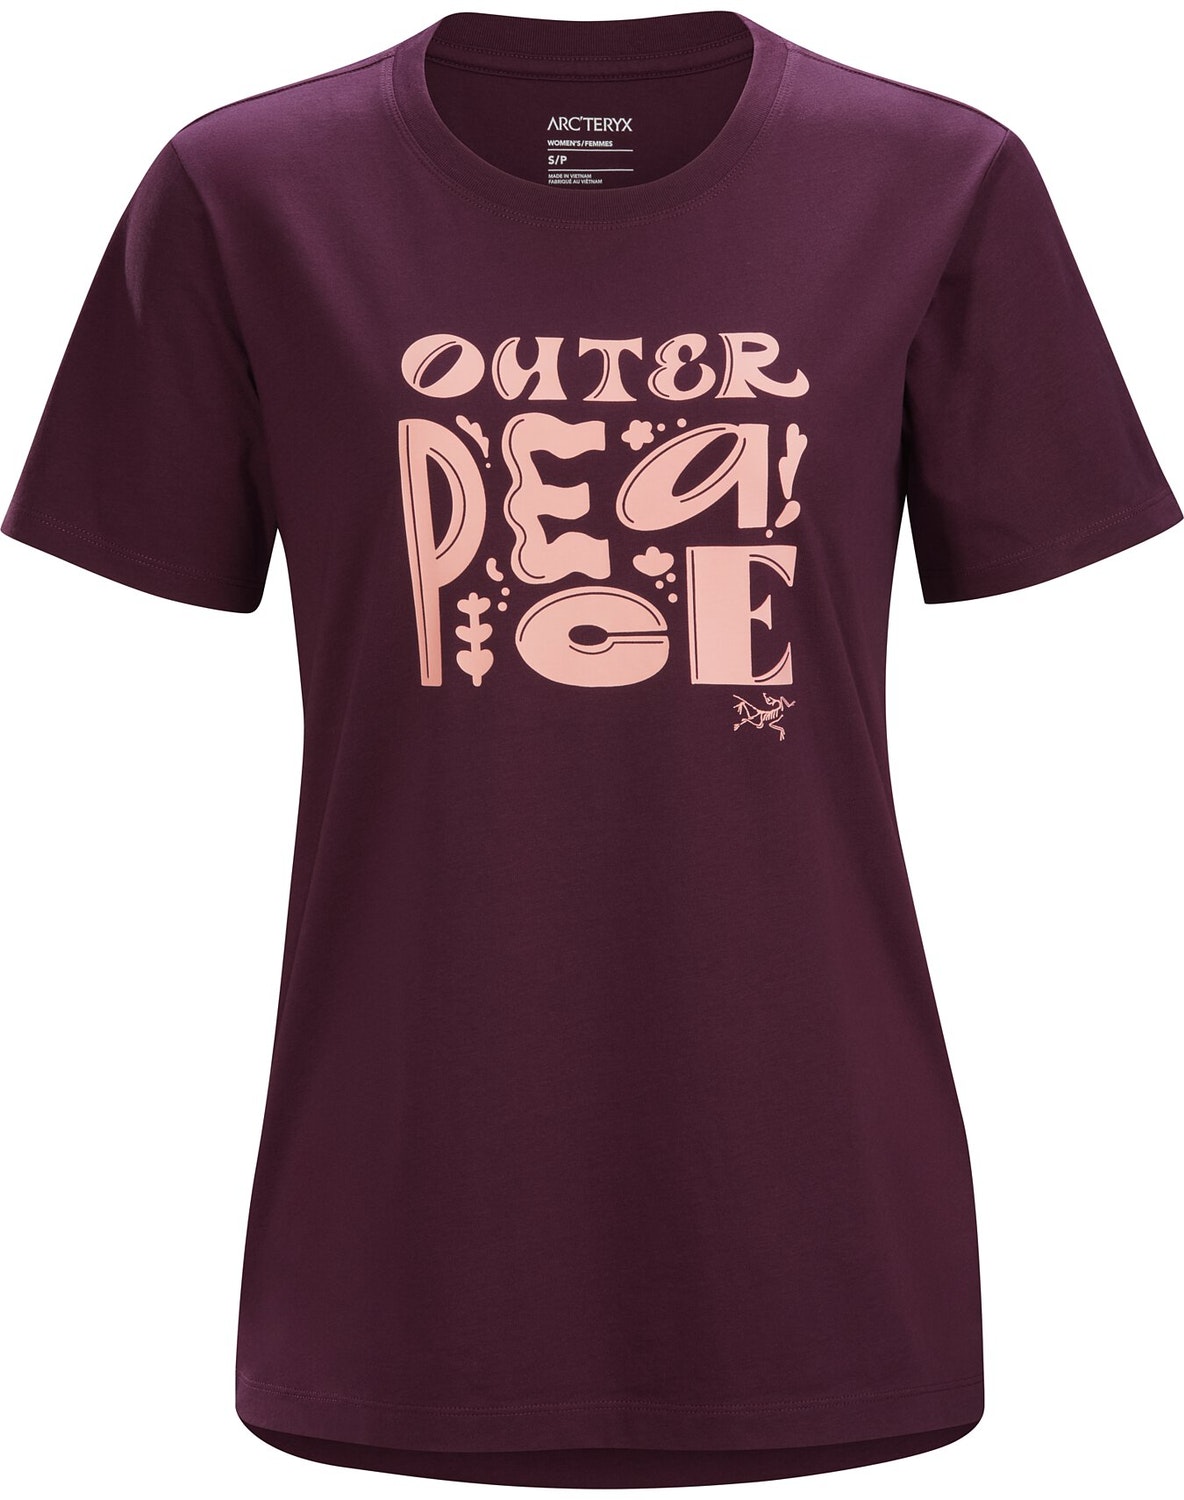 T-shirt Arc'teryx Outer Peace Donna Bordeaux - IT-54337654